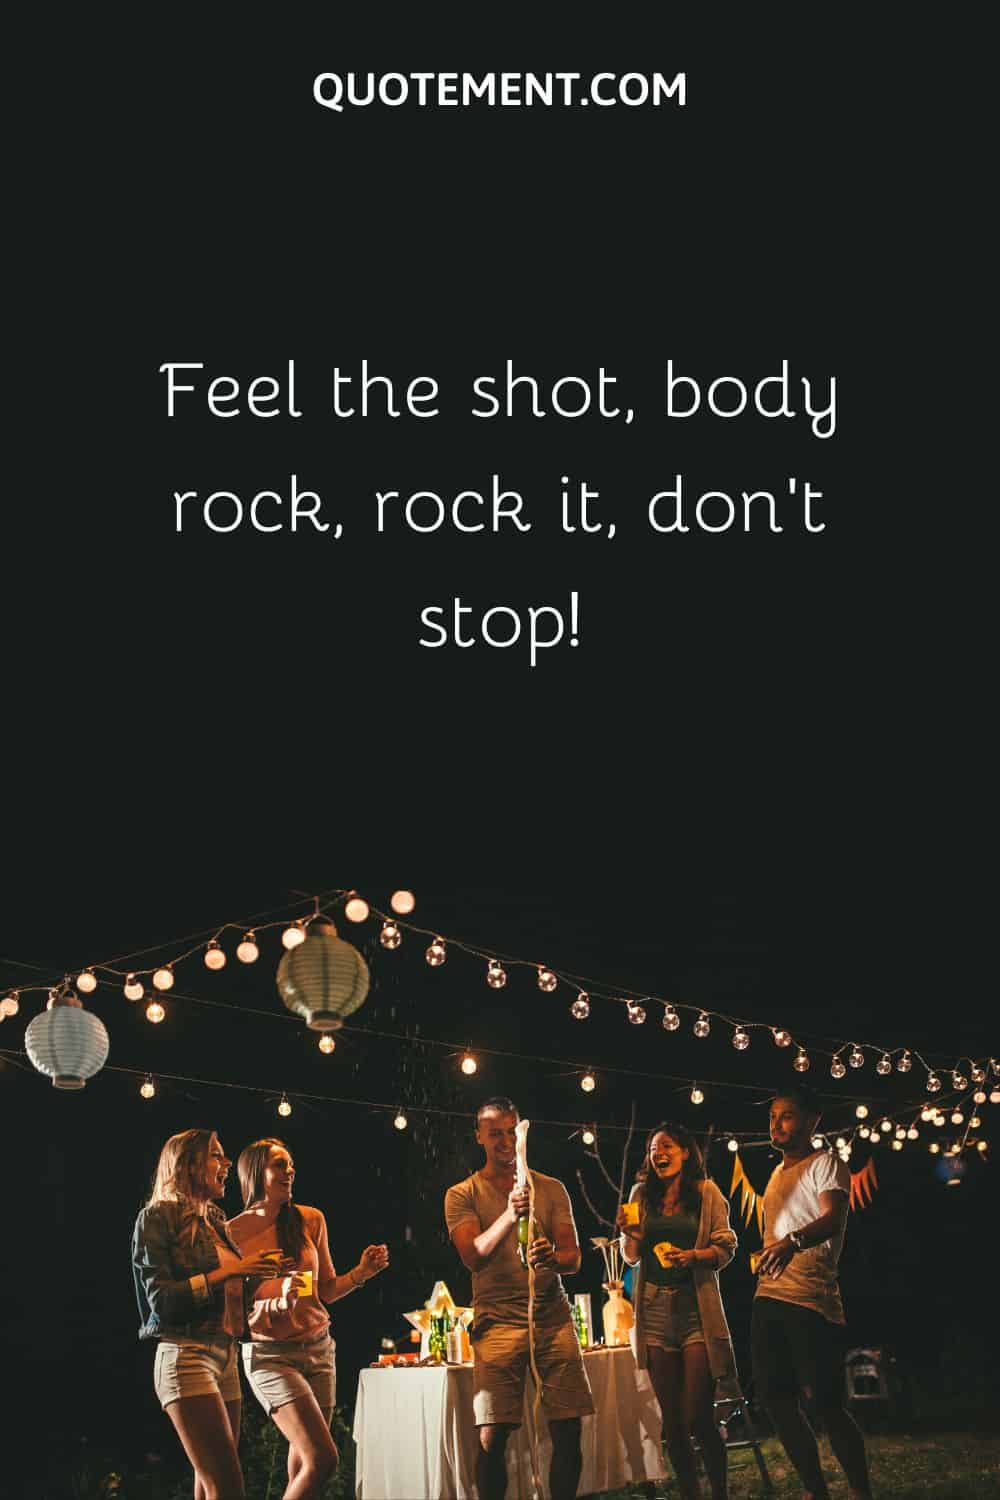 Feel the shot, body rock, rock it